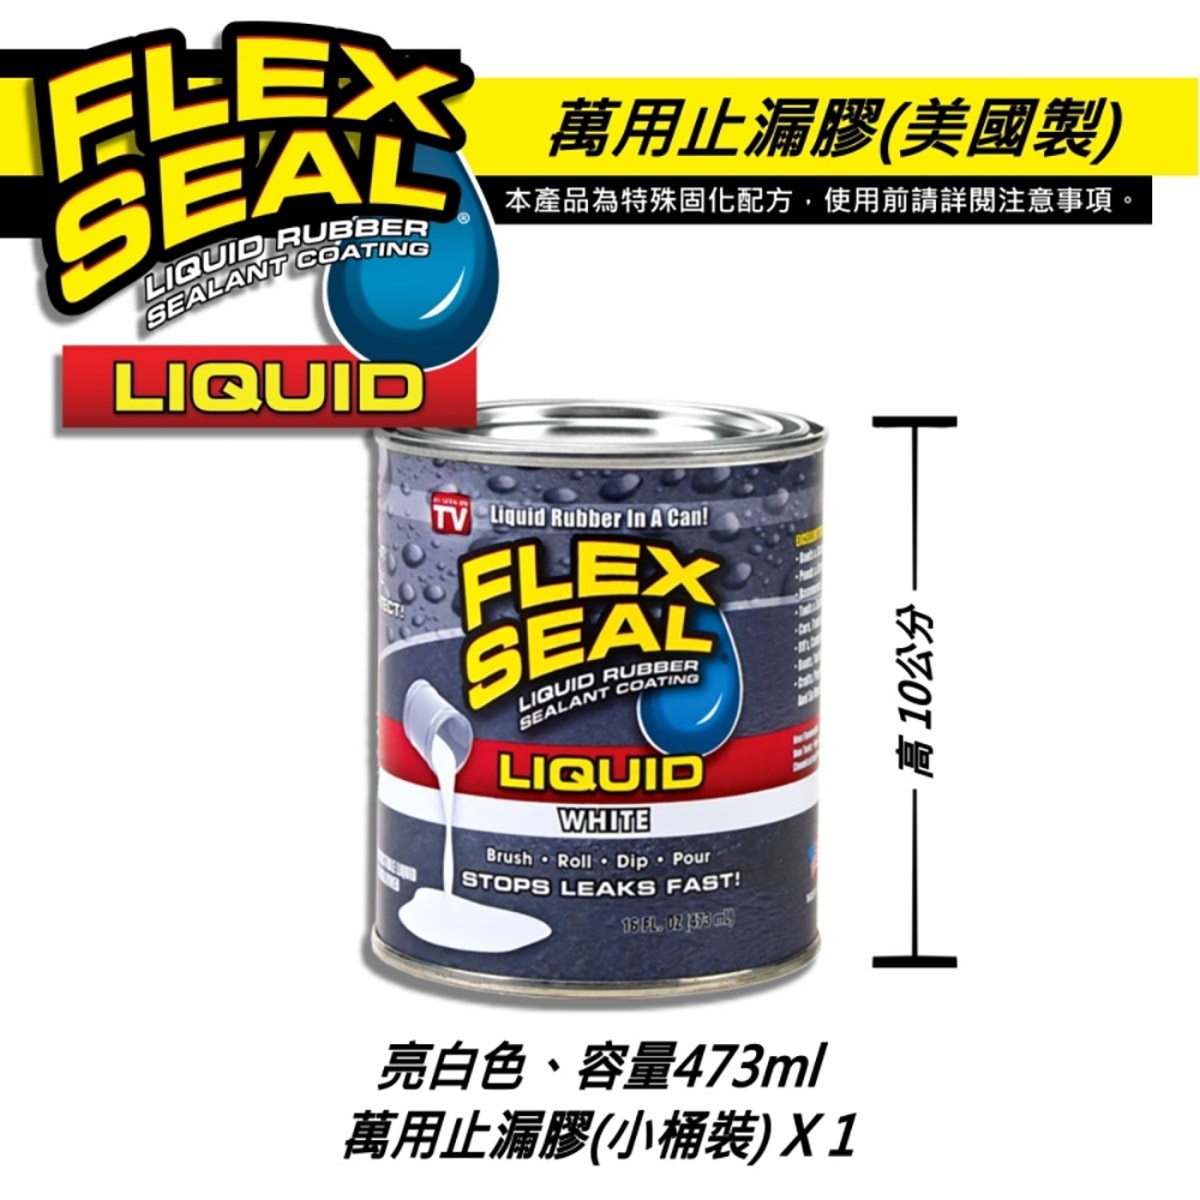 美國製FLEX SEAL LIQUID萬用止漏膠亮白色，固化乾燥後呈彈性橡膠，富彈性，耐曬抗風化，不變質、不乾裂，止漏膠可滲入縫隙完美填補。